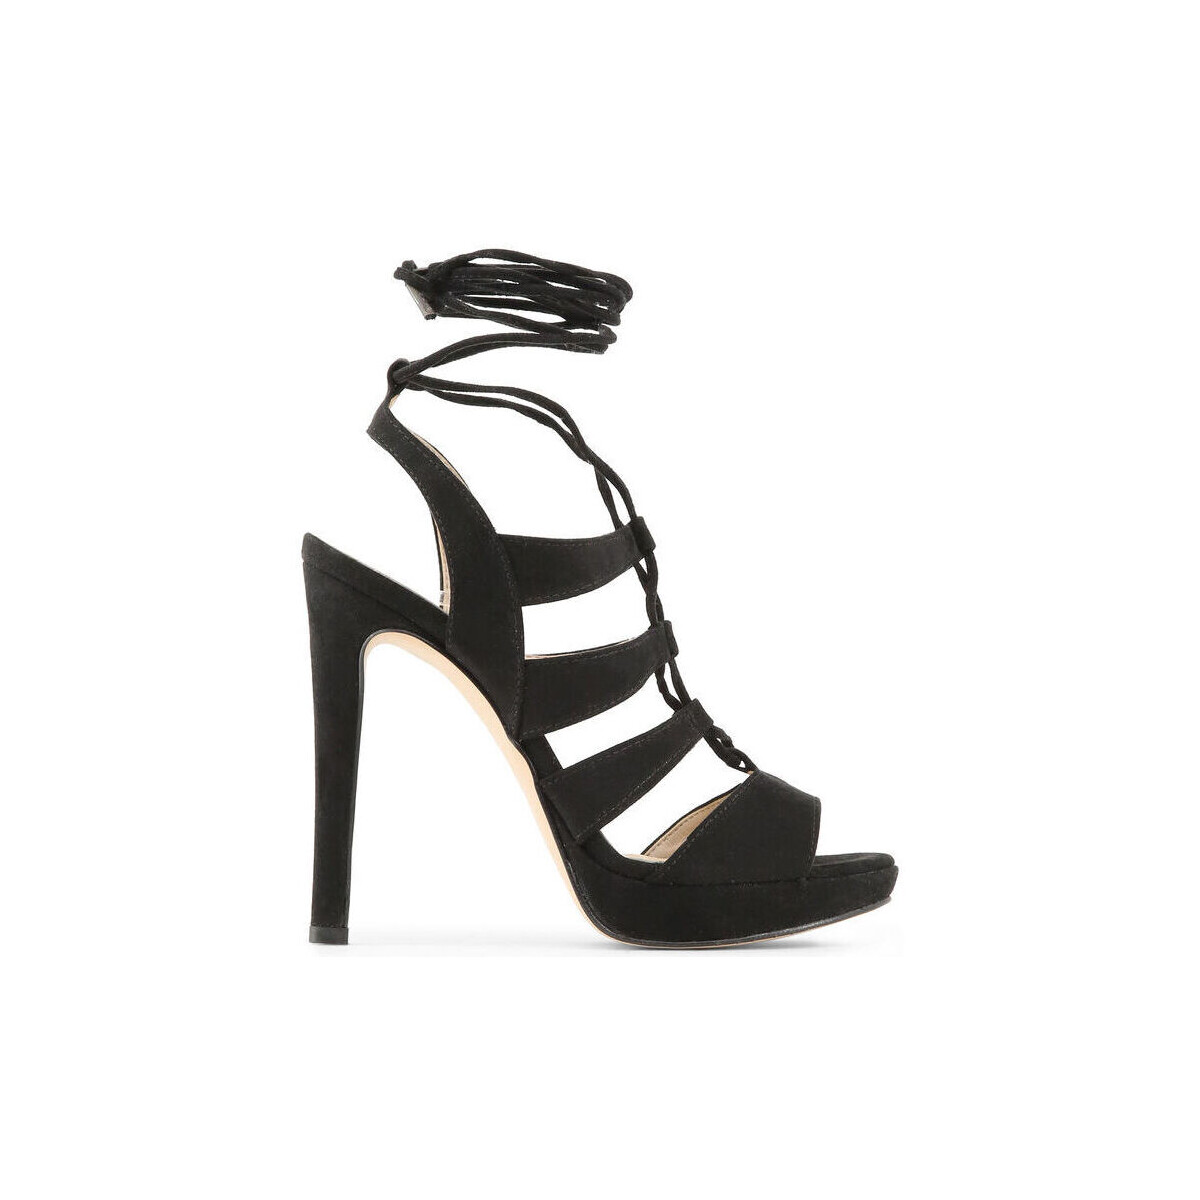 Παπούτσια Γυναίκα Σανδάλια / Πέδιλα Made In Italia - flaminia Black